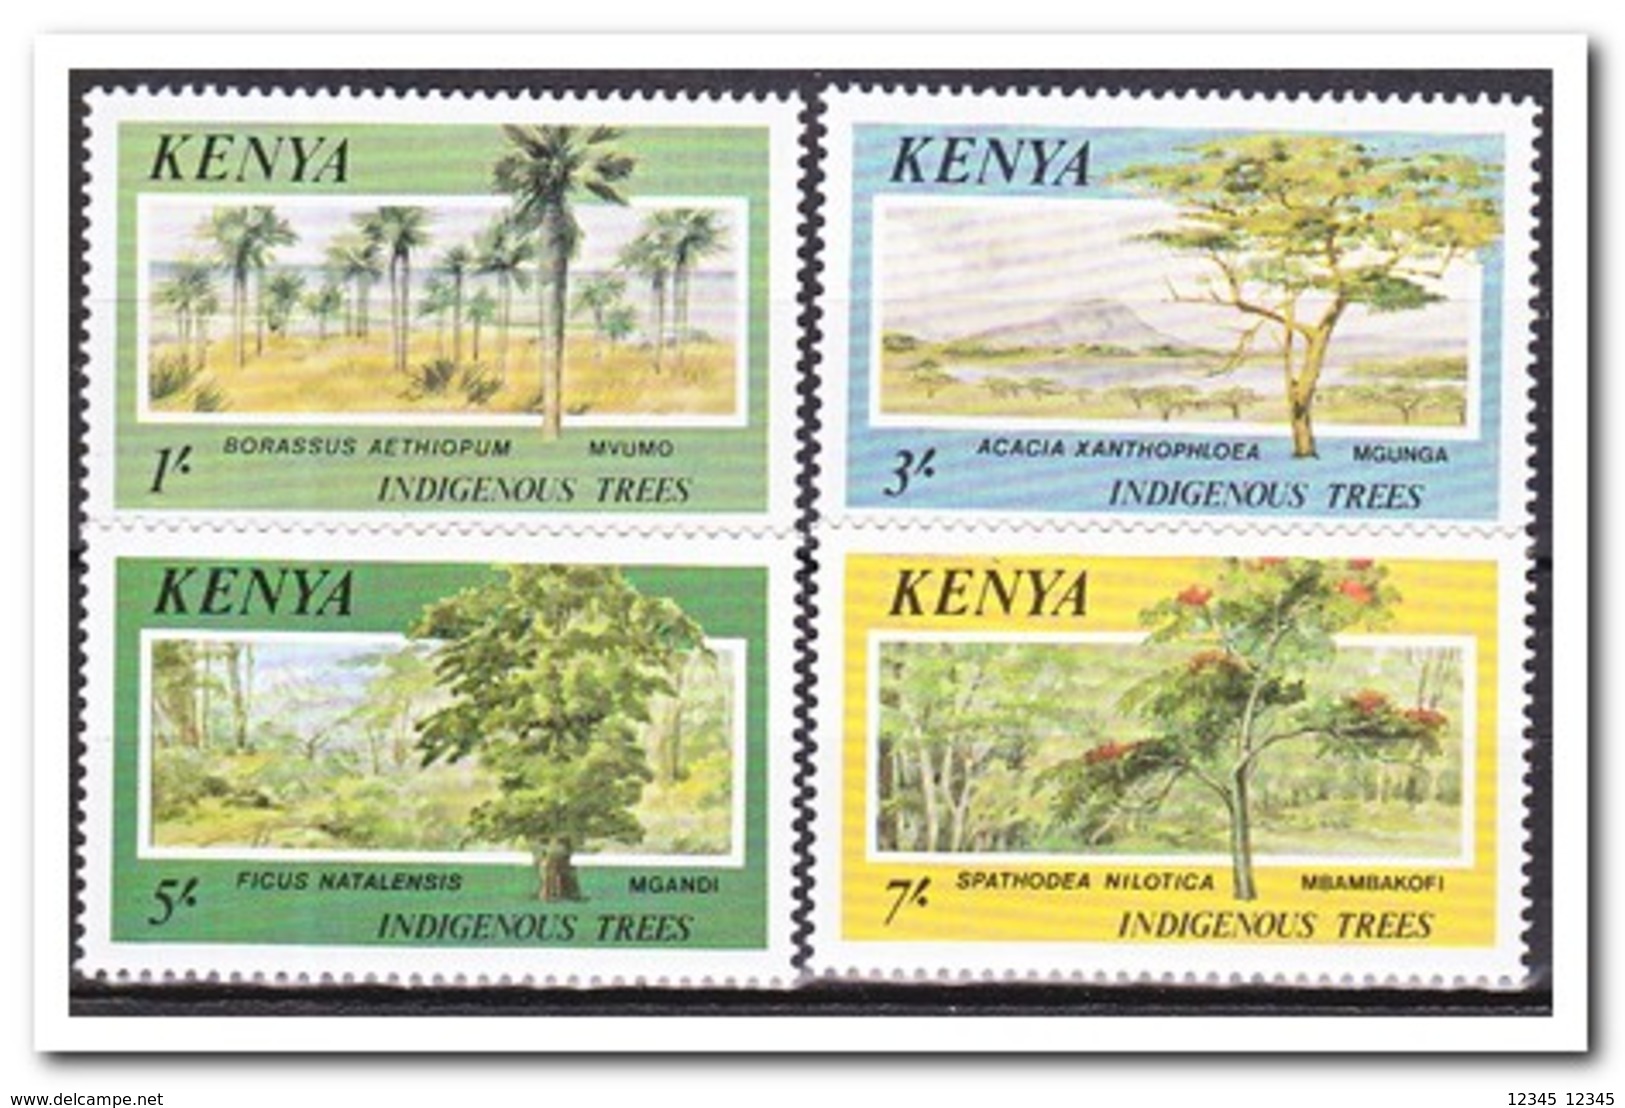 Kenia 1986, Postfris MNH, Trees - Kenia (1963-...)